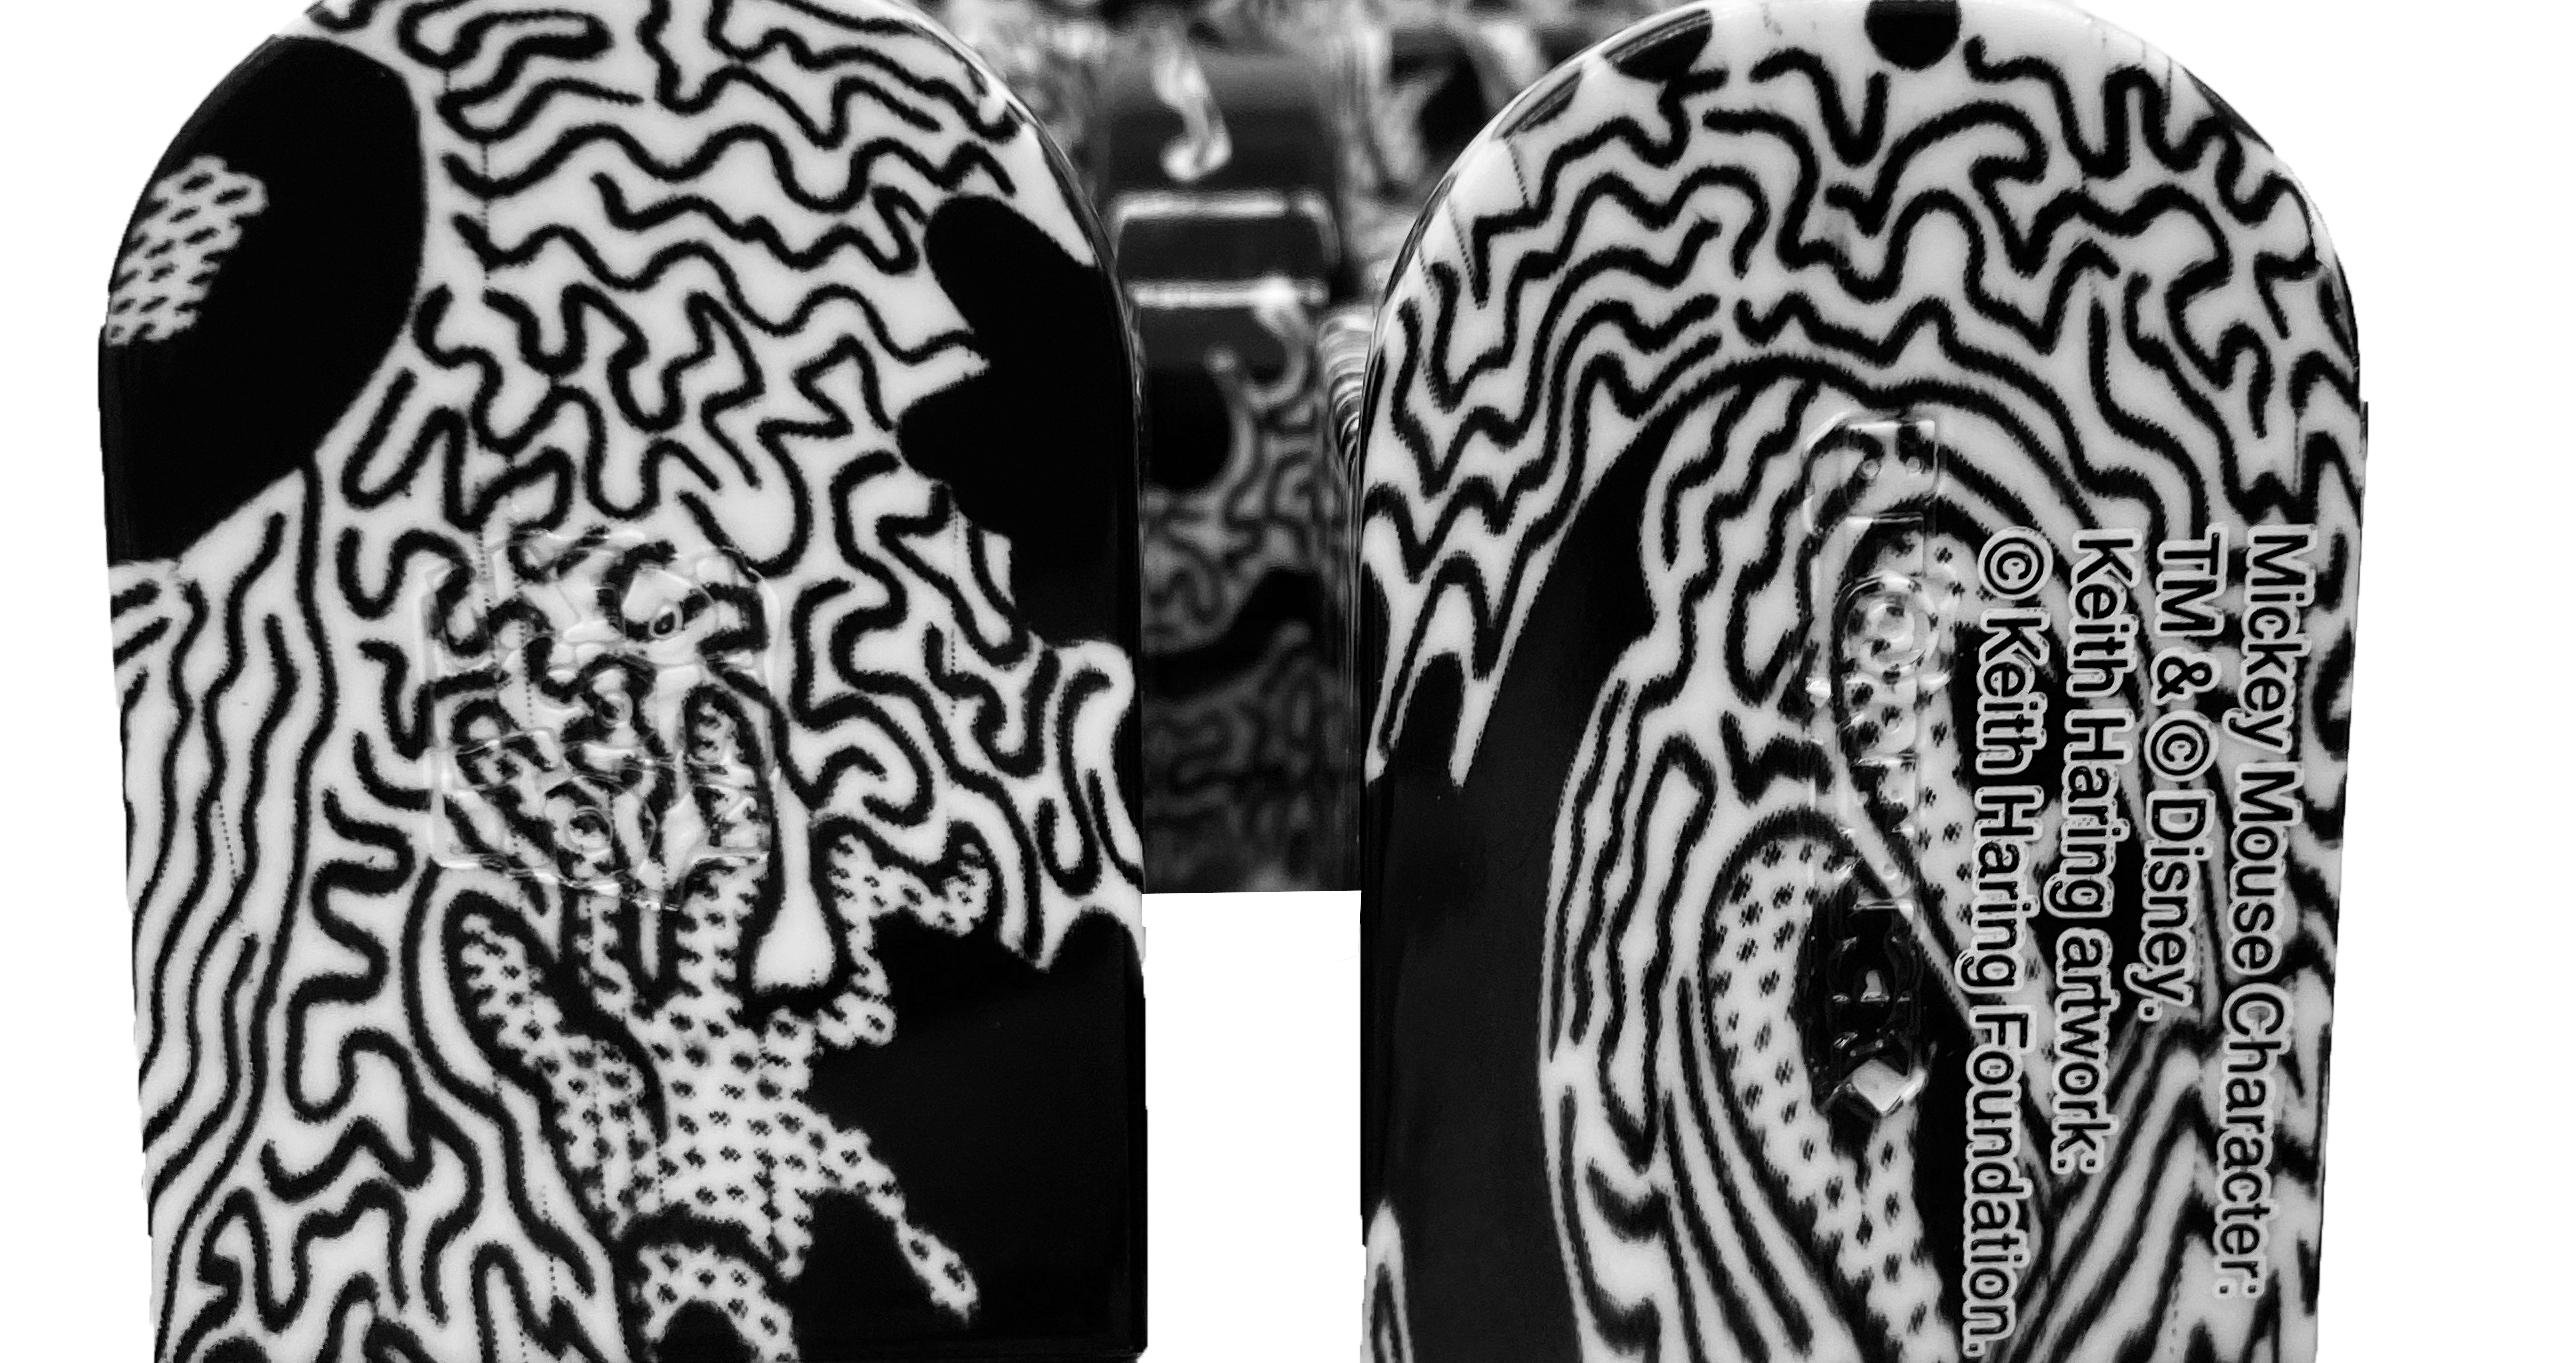 Keith Haring Mickey Mouse Bearbrick : Ensemble de deux (400% & 100%) :
Une pièce de collection unique et intemporelle sous la marque et la licence de la succession de Keith Haring. La pièce de collection en partenariat révèle l'œuvre de Keith Haring